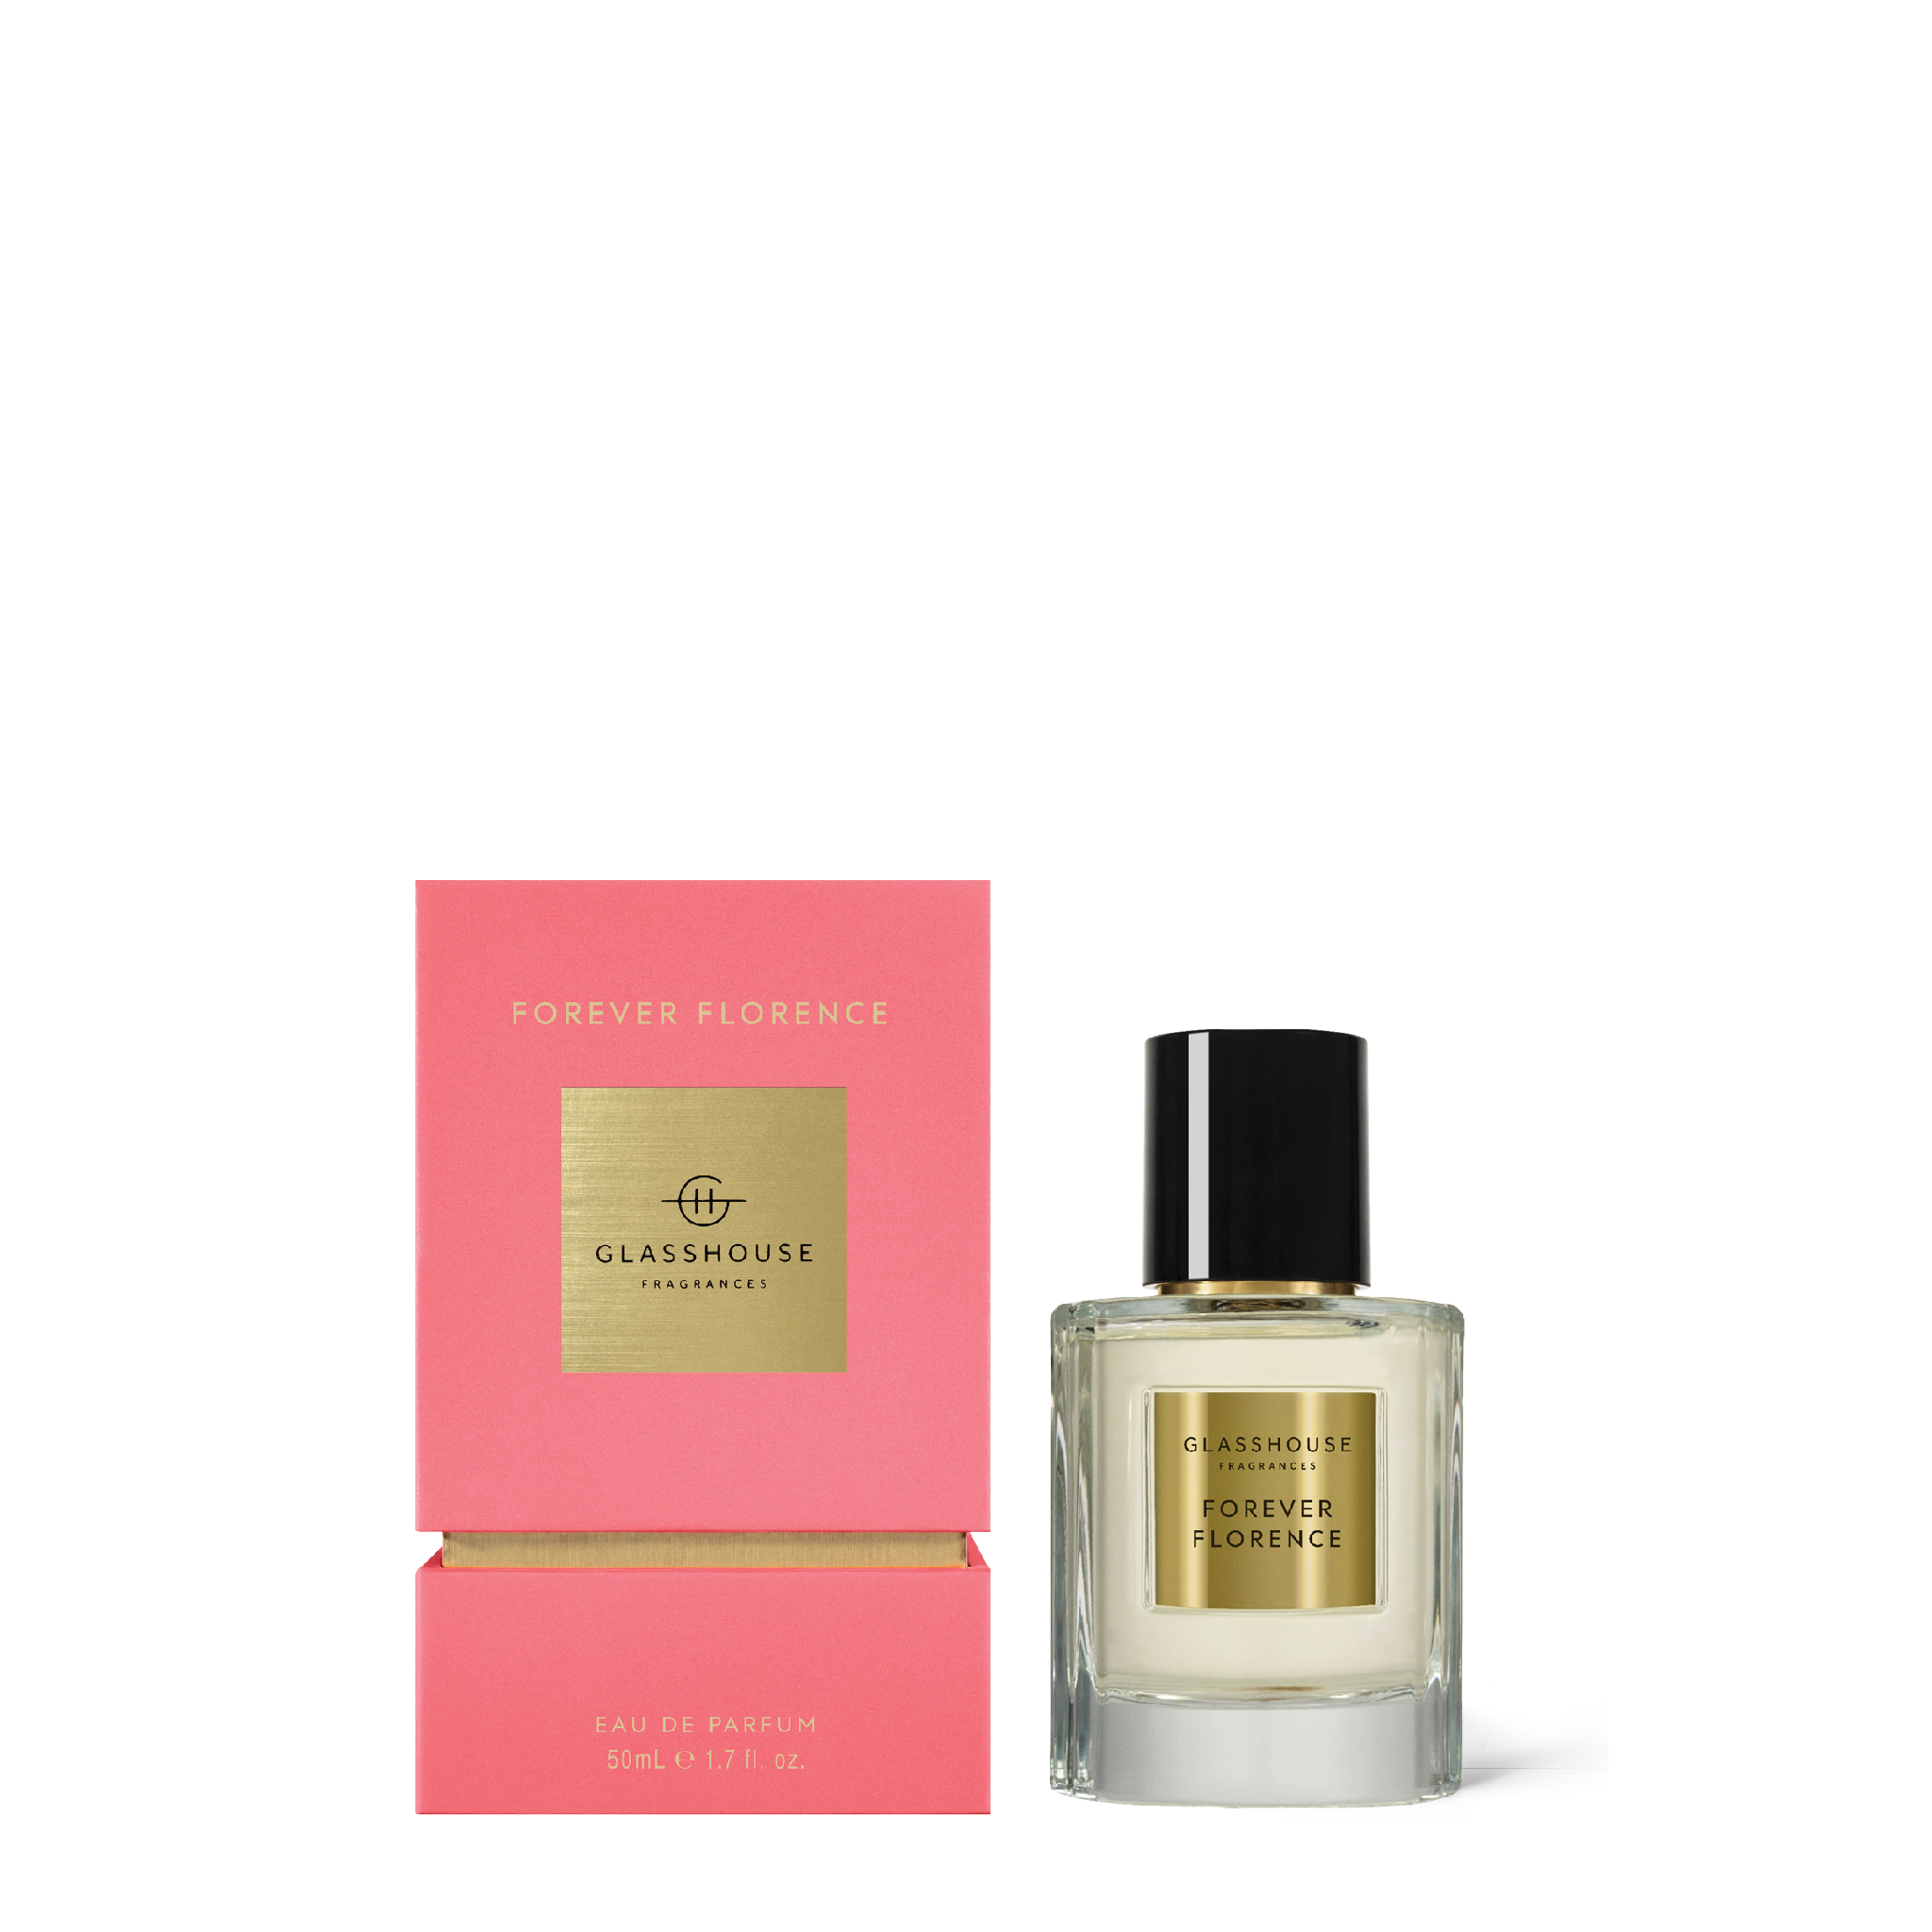 Forever Florence - 50mL Eau de Parfum | Glasshouse Fragrances ...